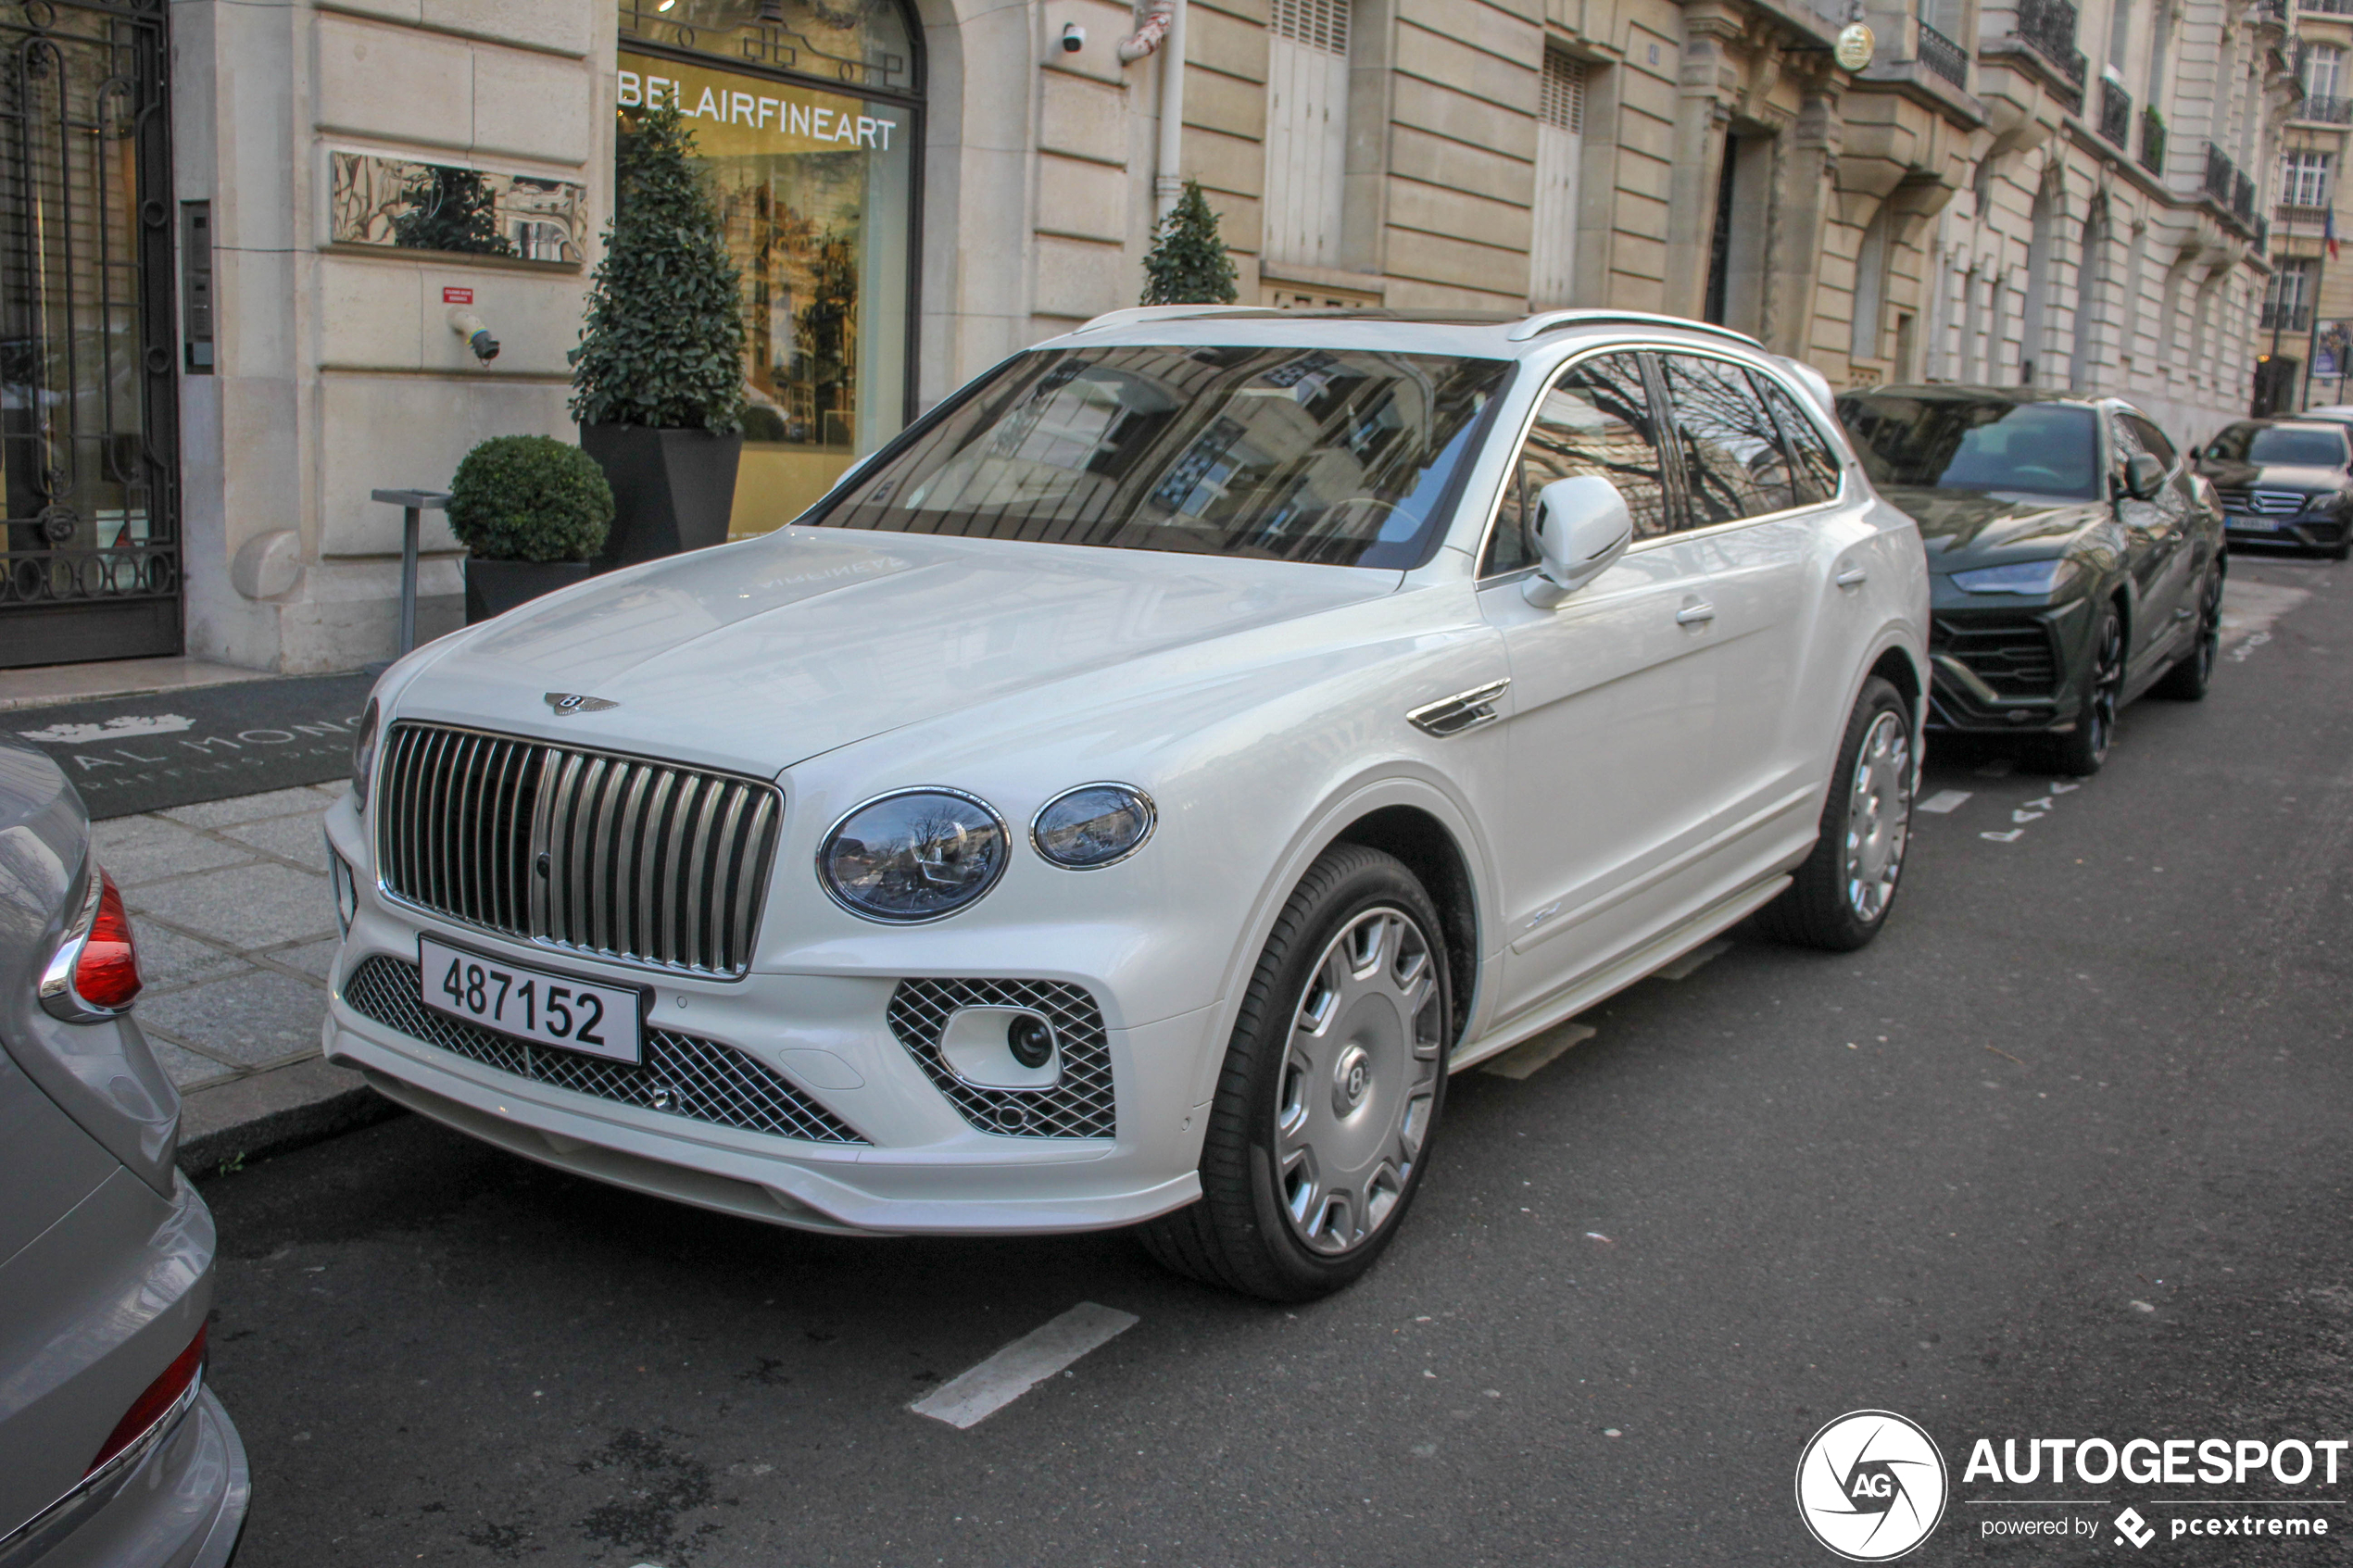 Exclusieve Bentleys uit Qatar duiken op in Parijs